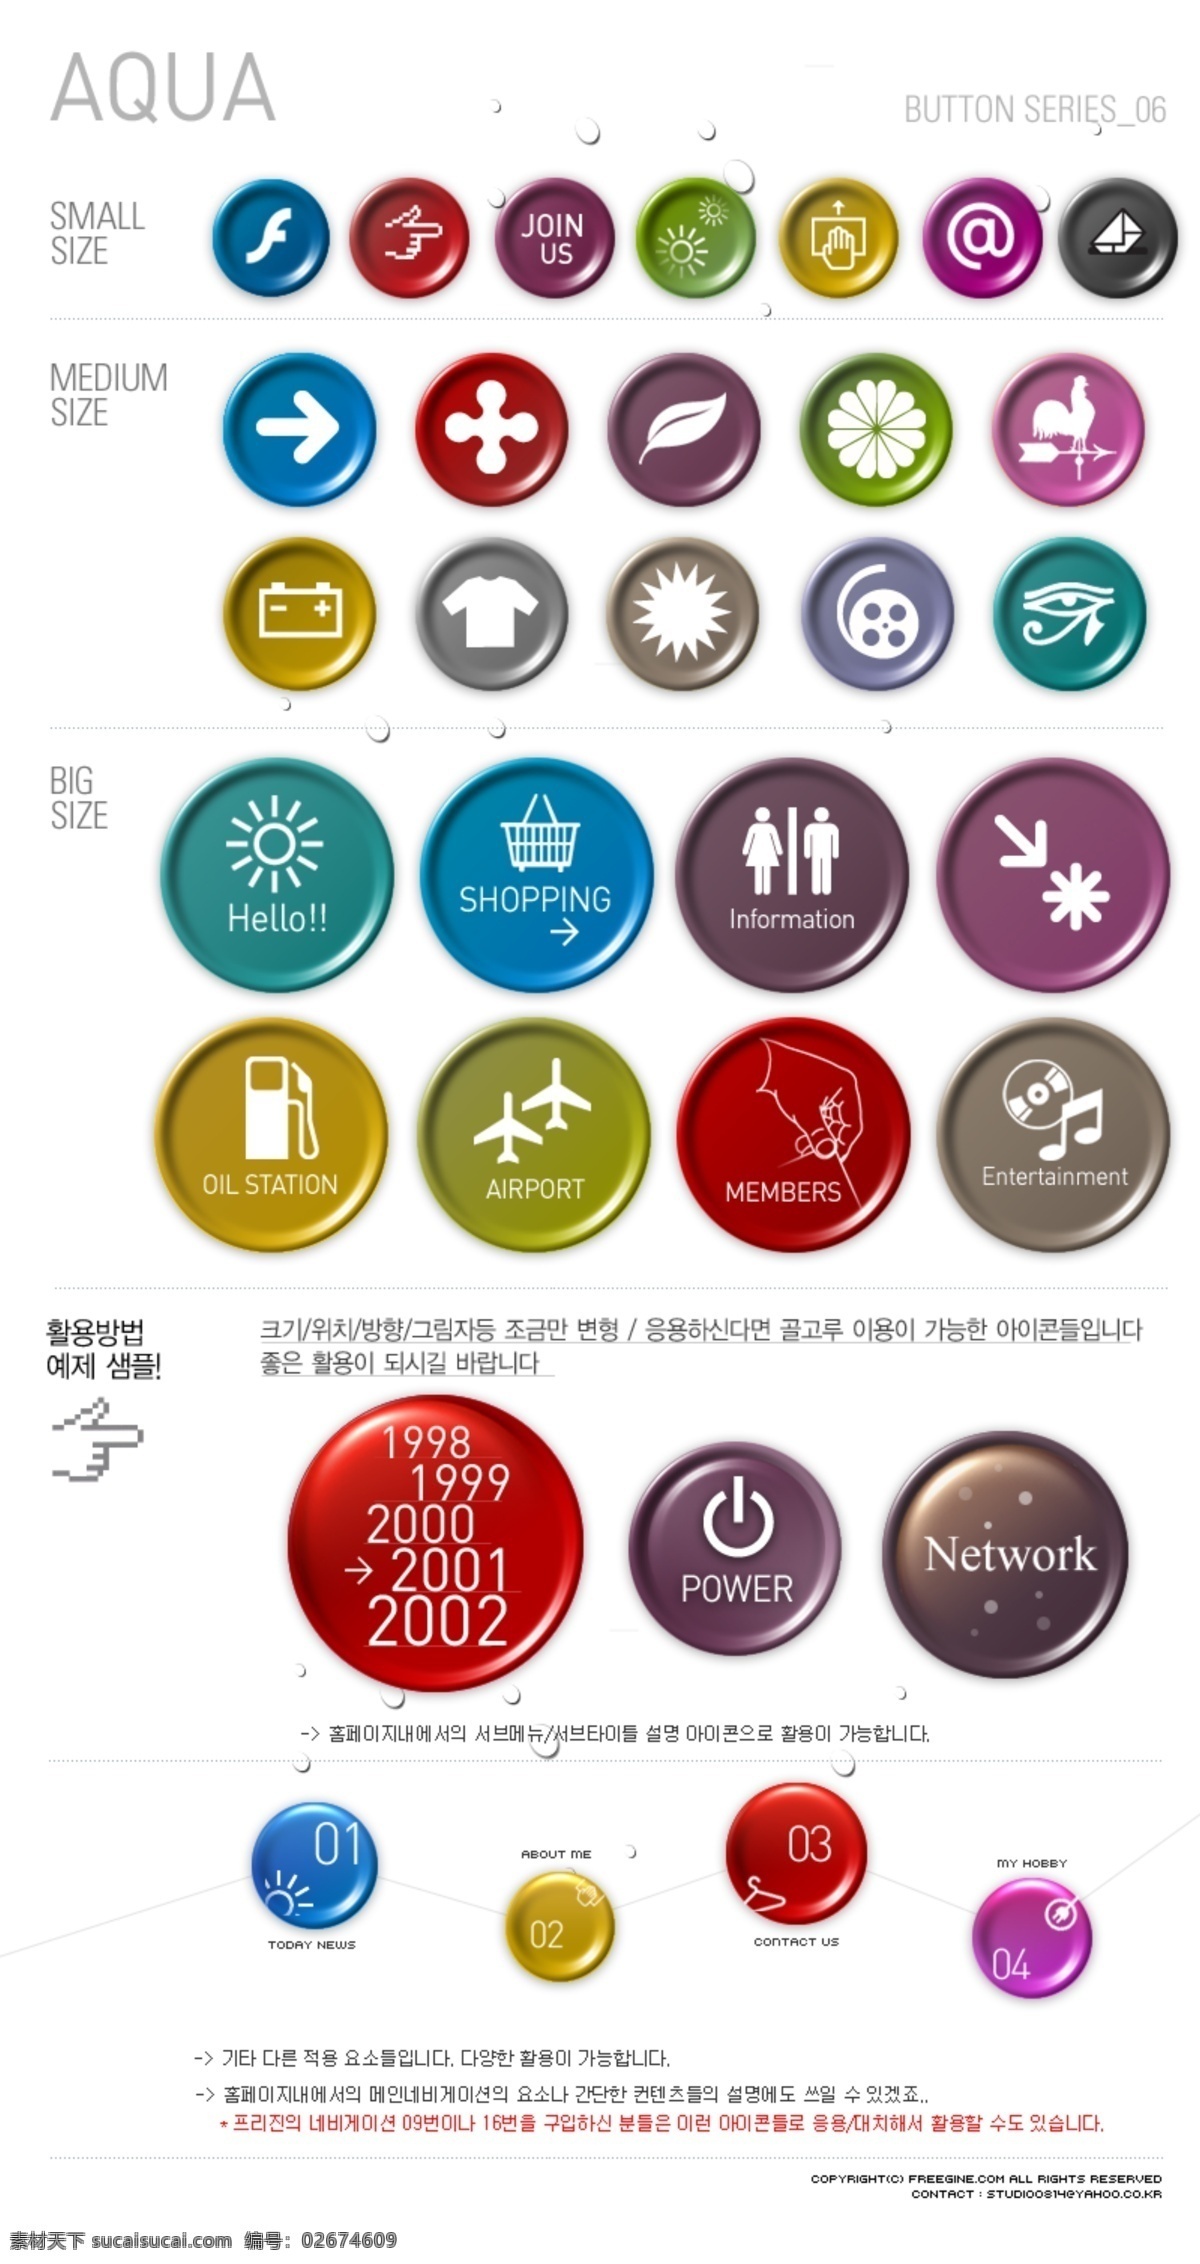 韩国 网页设计 水晶 图标 psd源文件